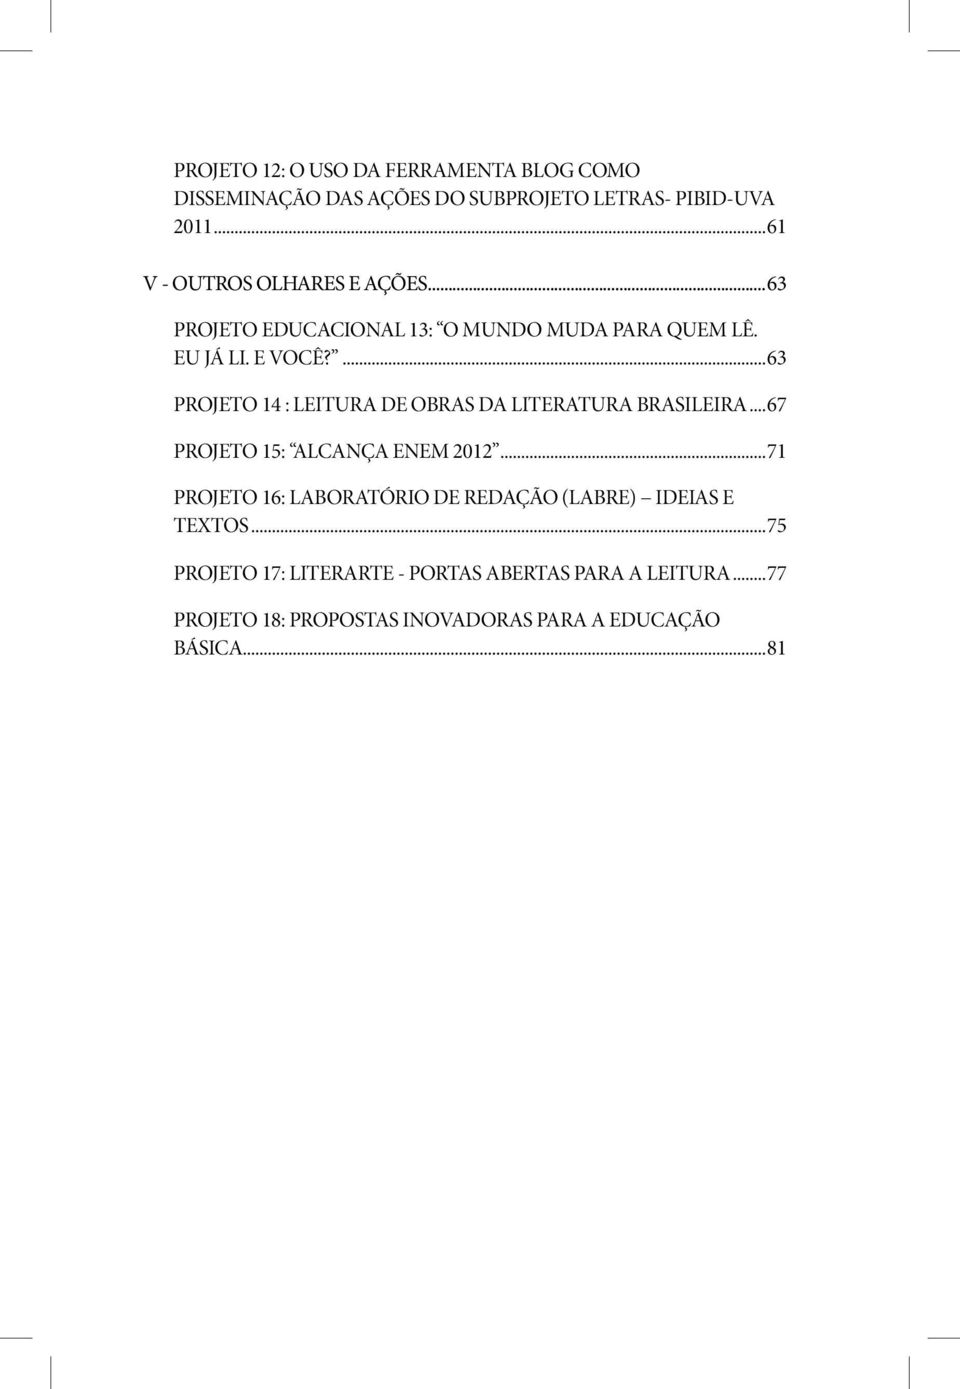 ...63 PROJETO 14 : LEITURA DE OBRAS DA LITERATURA BRASILEIRA...67 PROJETO 15: ALCANÇA ENEM 2012.